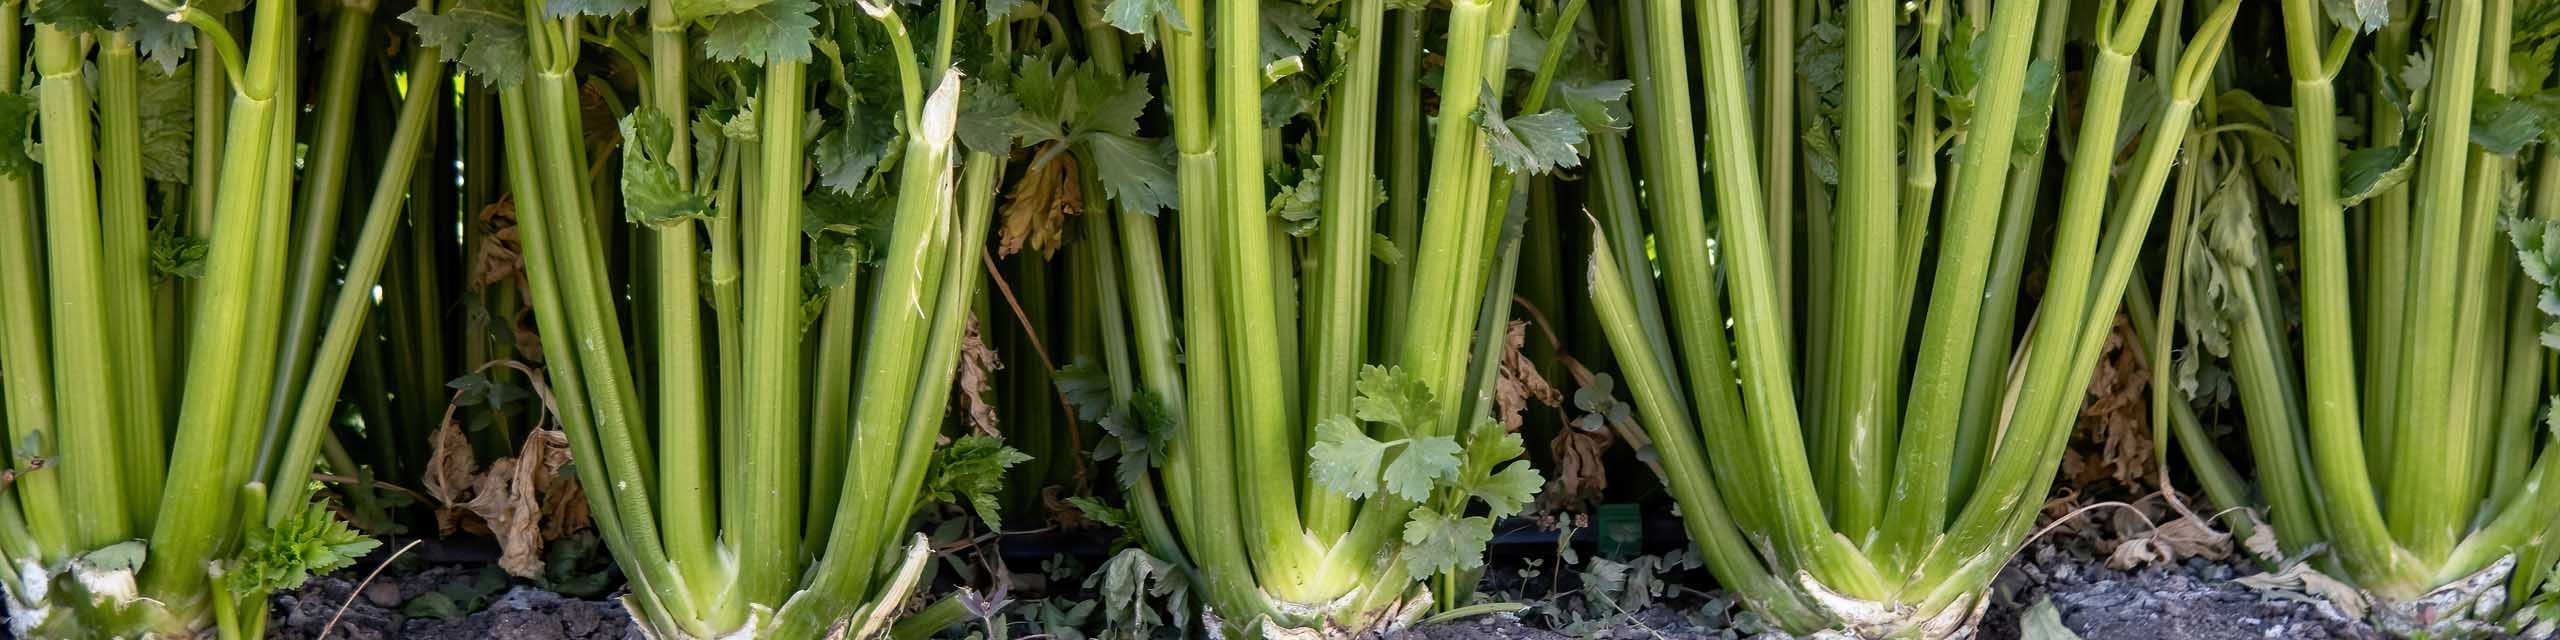 Celery plants in a row in a veggie garden.